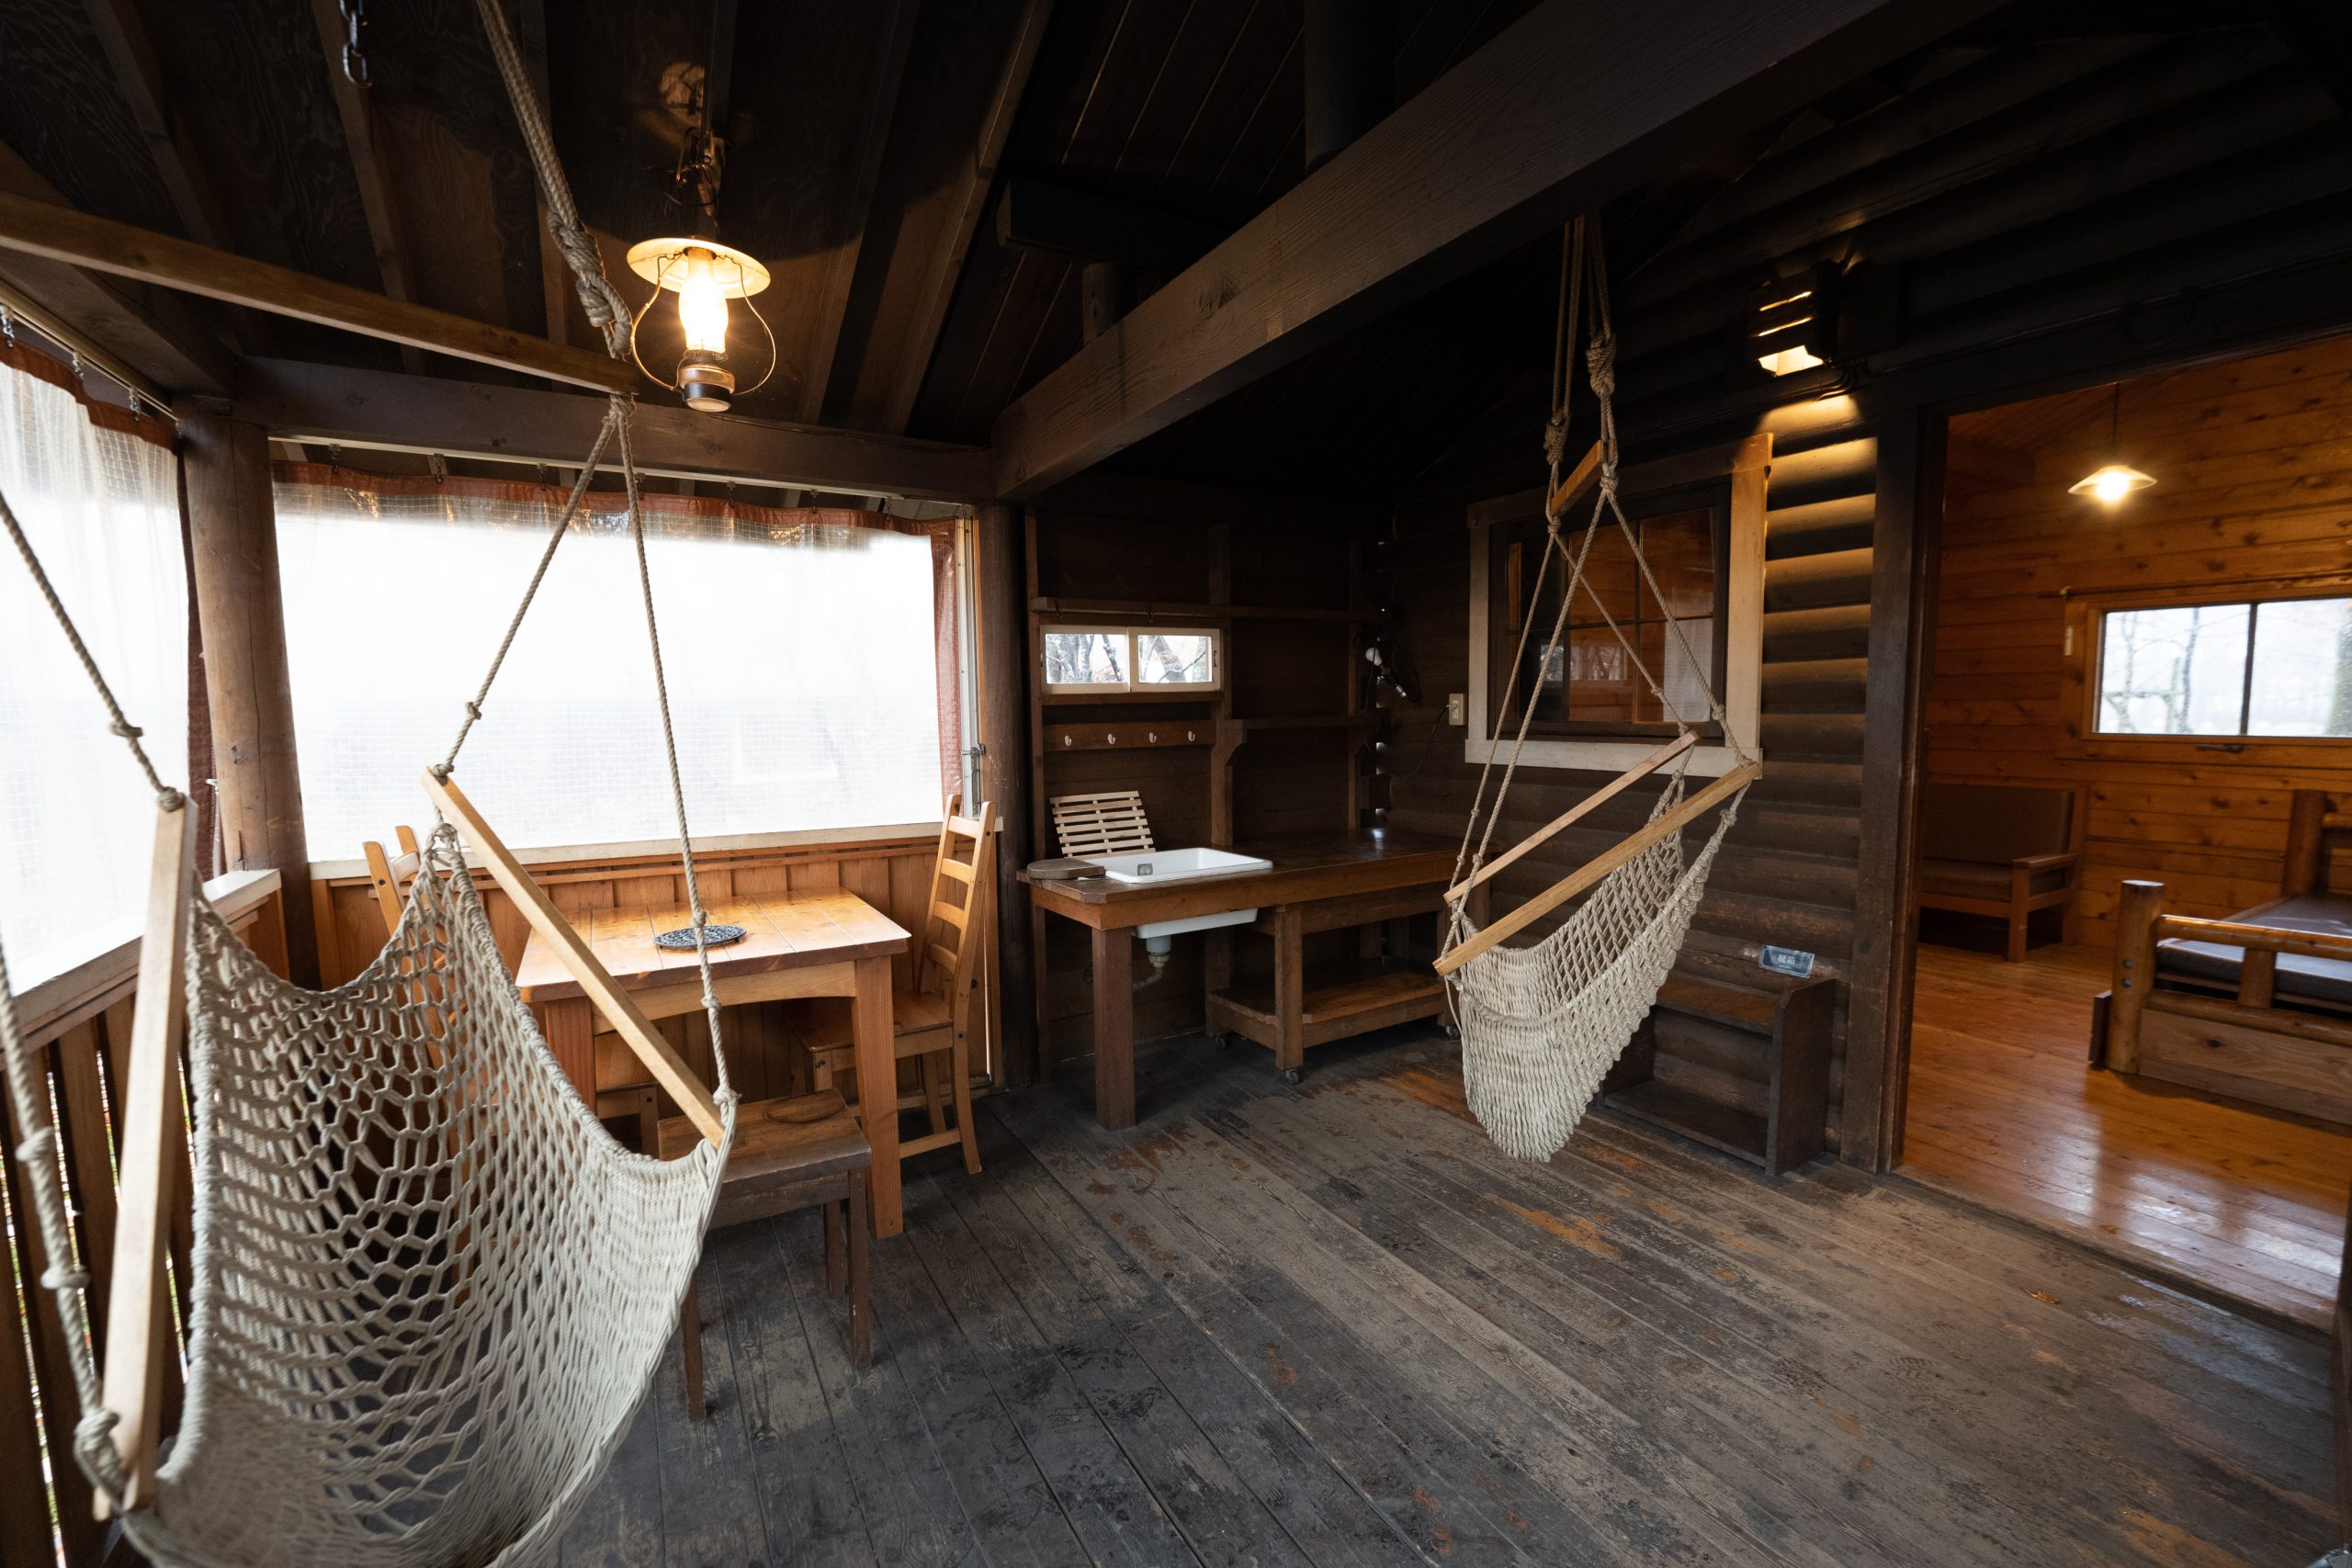 長野原町北軽井沢から、素敵な温泉宿と大人気のキャンプ場をご紹介